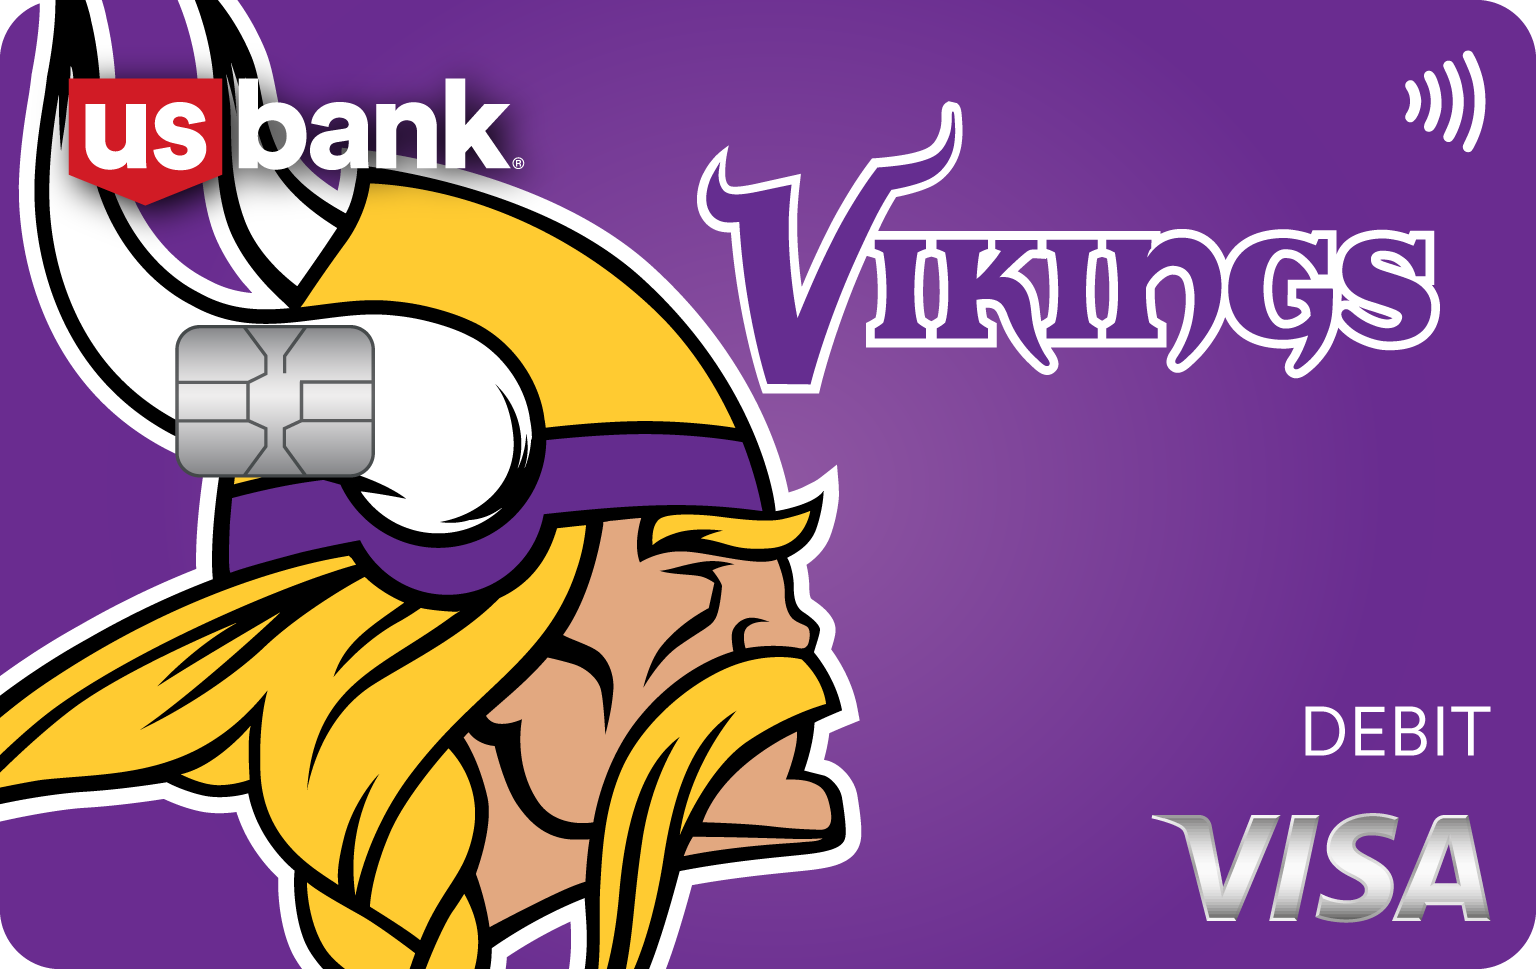 Card 6. Minnesota Vikings Visa debit card design.